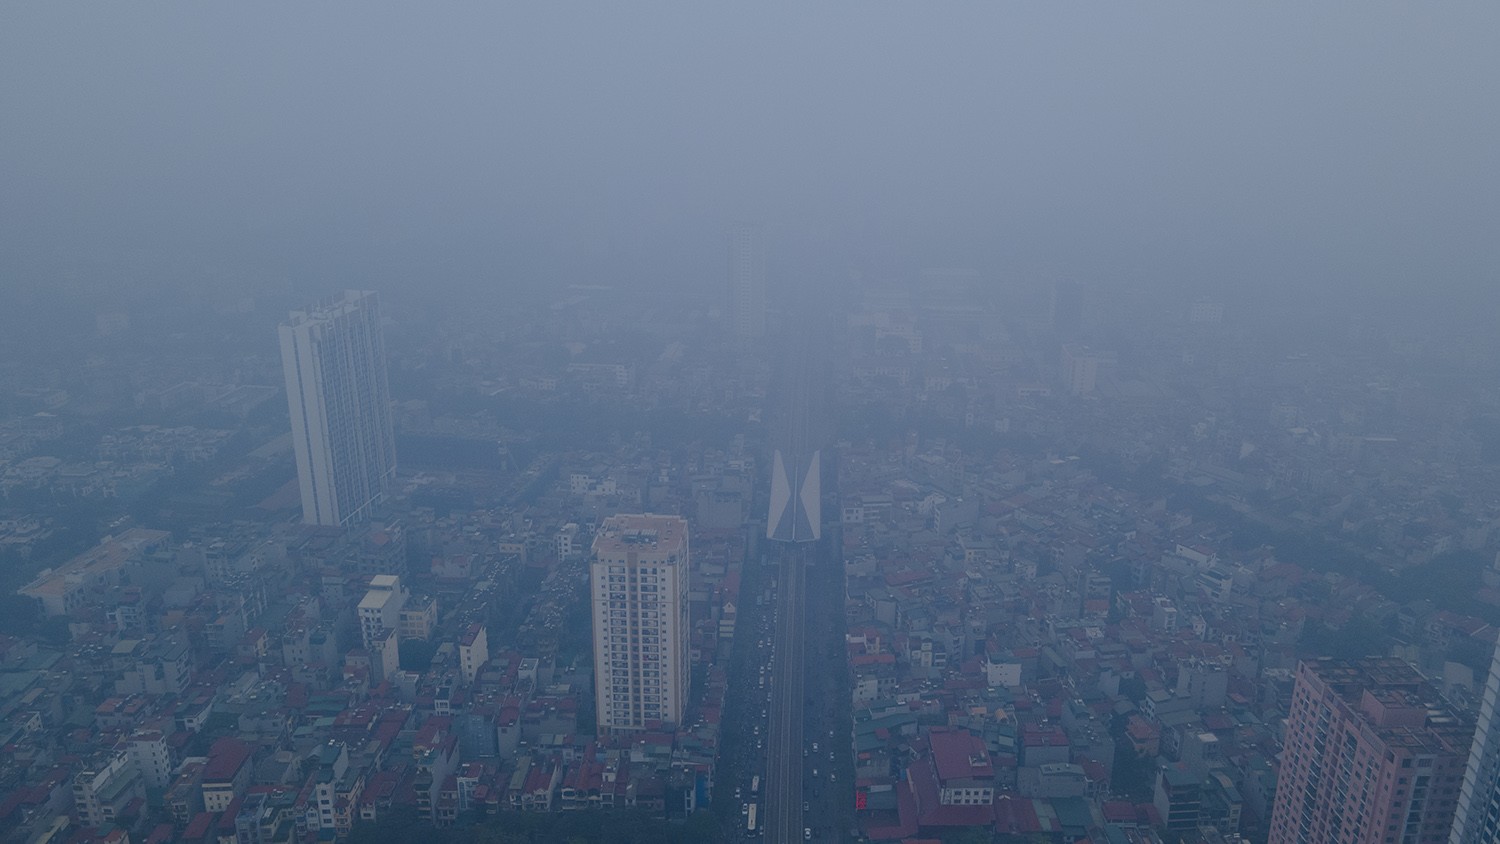 Trung tâm Hà Nội chìm trong sương mù dày đặc, chất lượng không khí nhiều nơi ở “mức đỏ” - 8